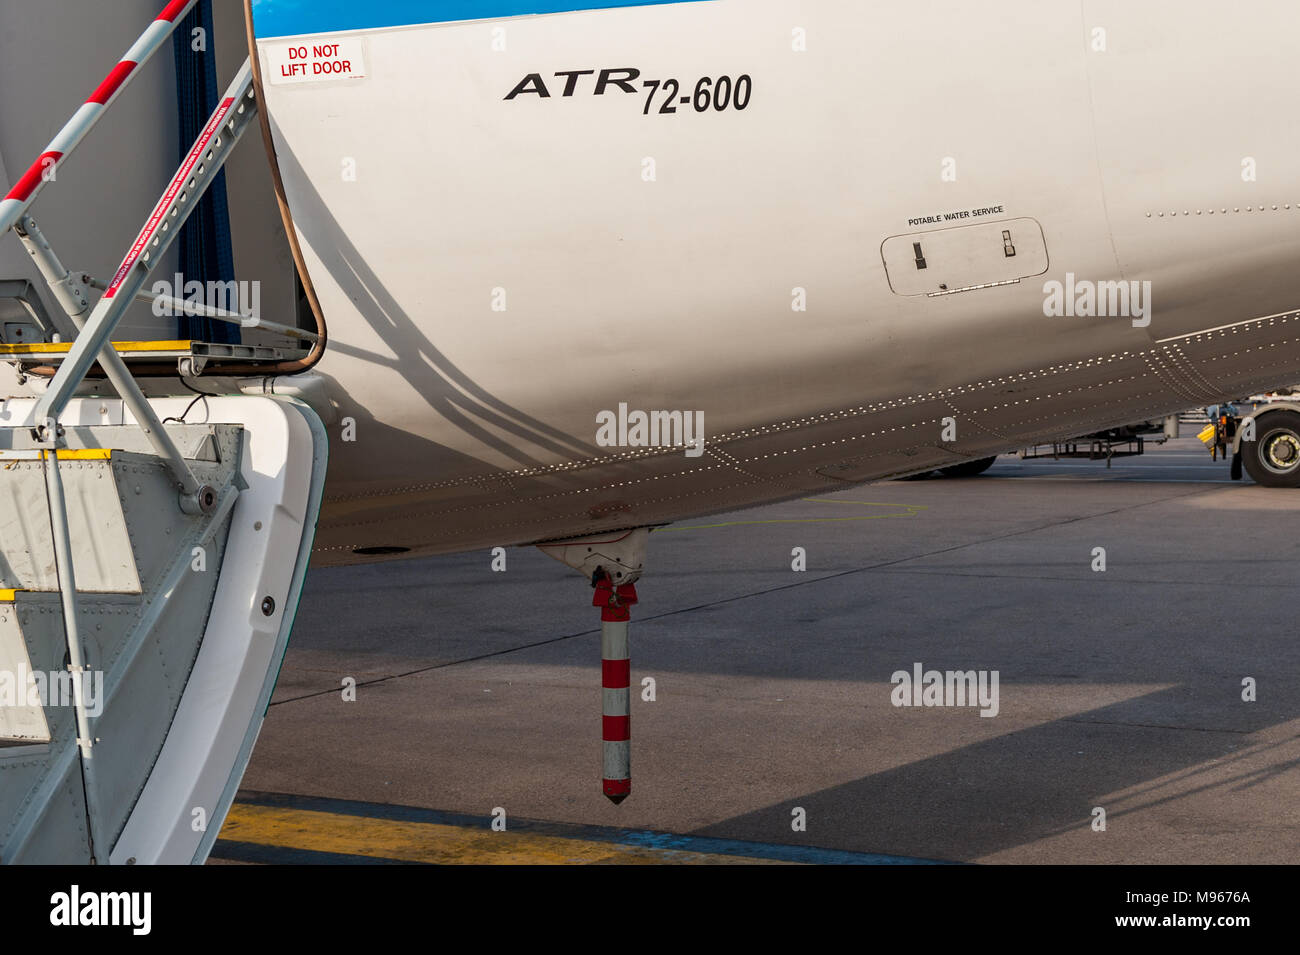 Abnehmbarer Heckstand auf einem Aer Lingus/Stobart Air ATR 72-600 Flugzeug, um ein Umkippen des Flugzeugs aufgrund von Gewichtsungleichgewicht zu verhindern. Stockfoto